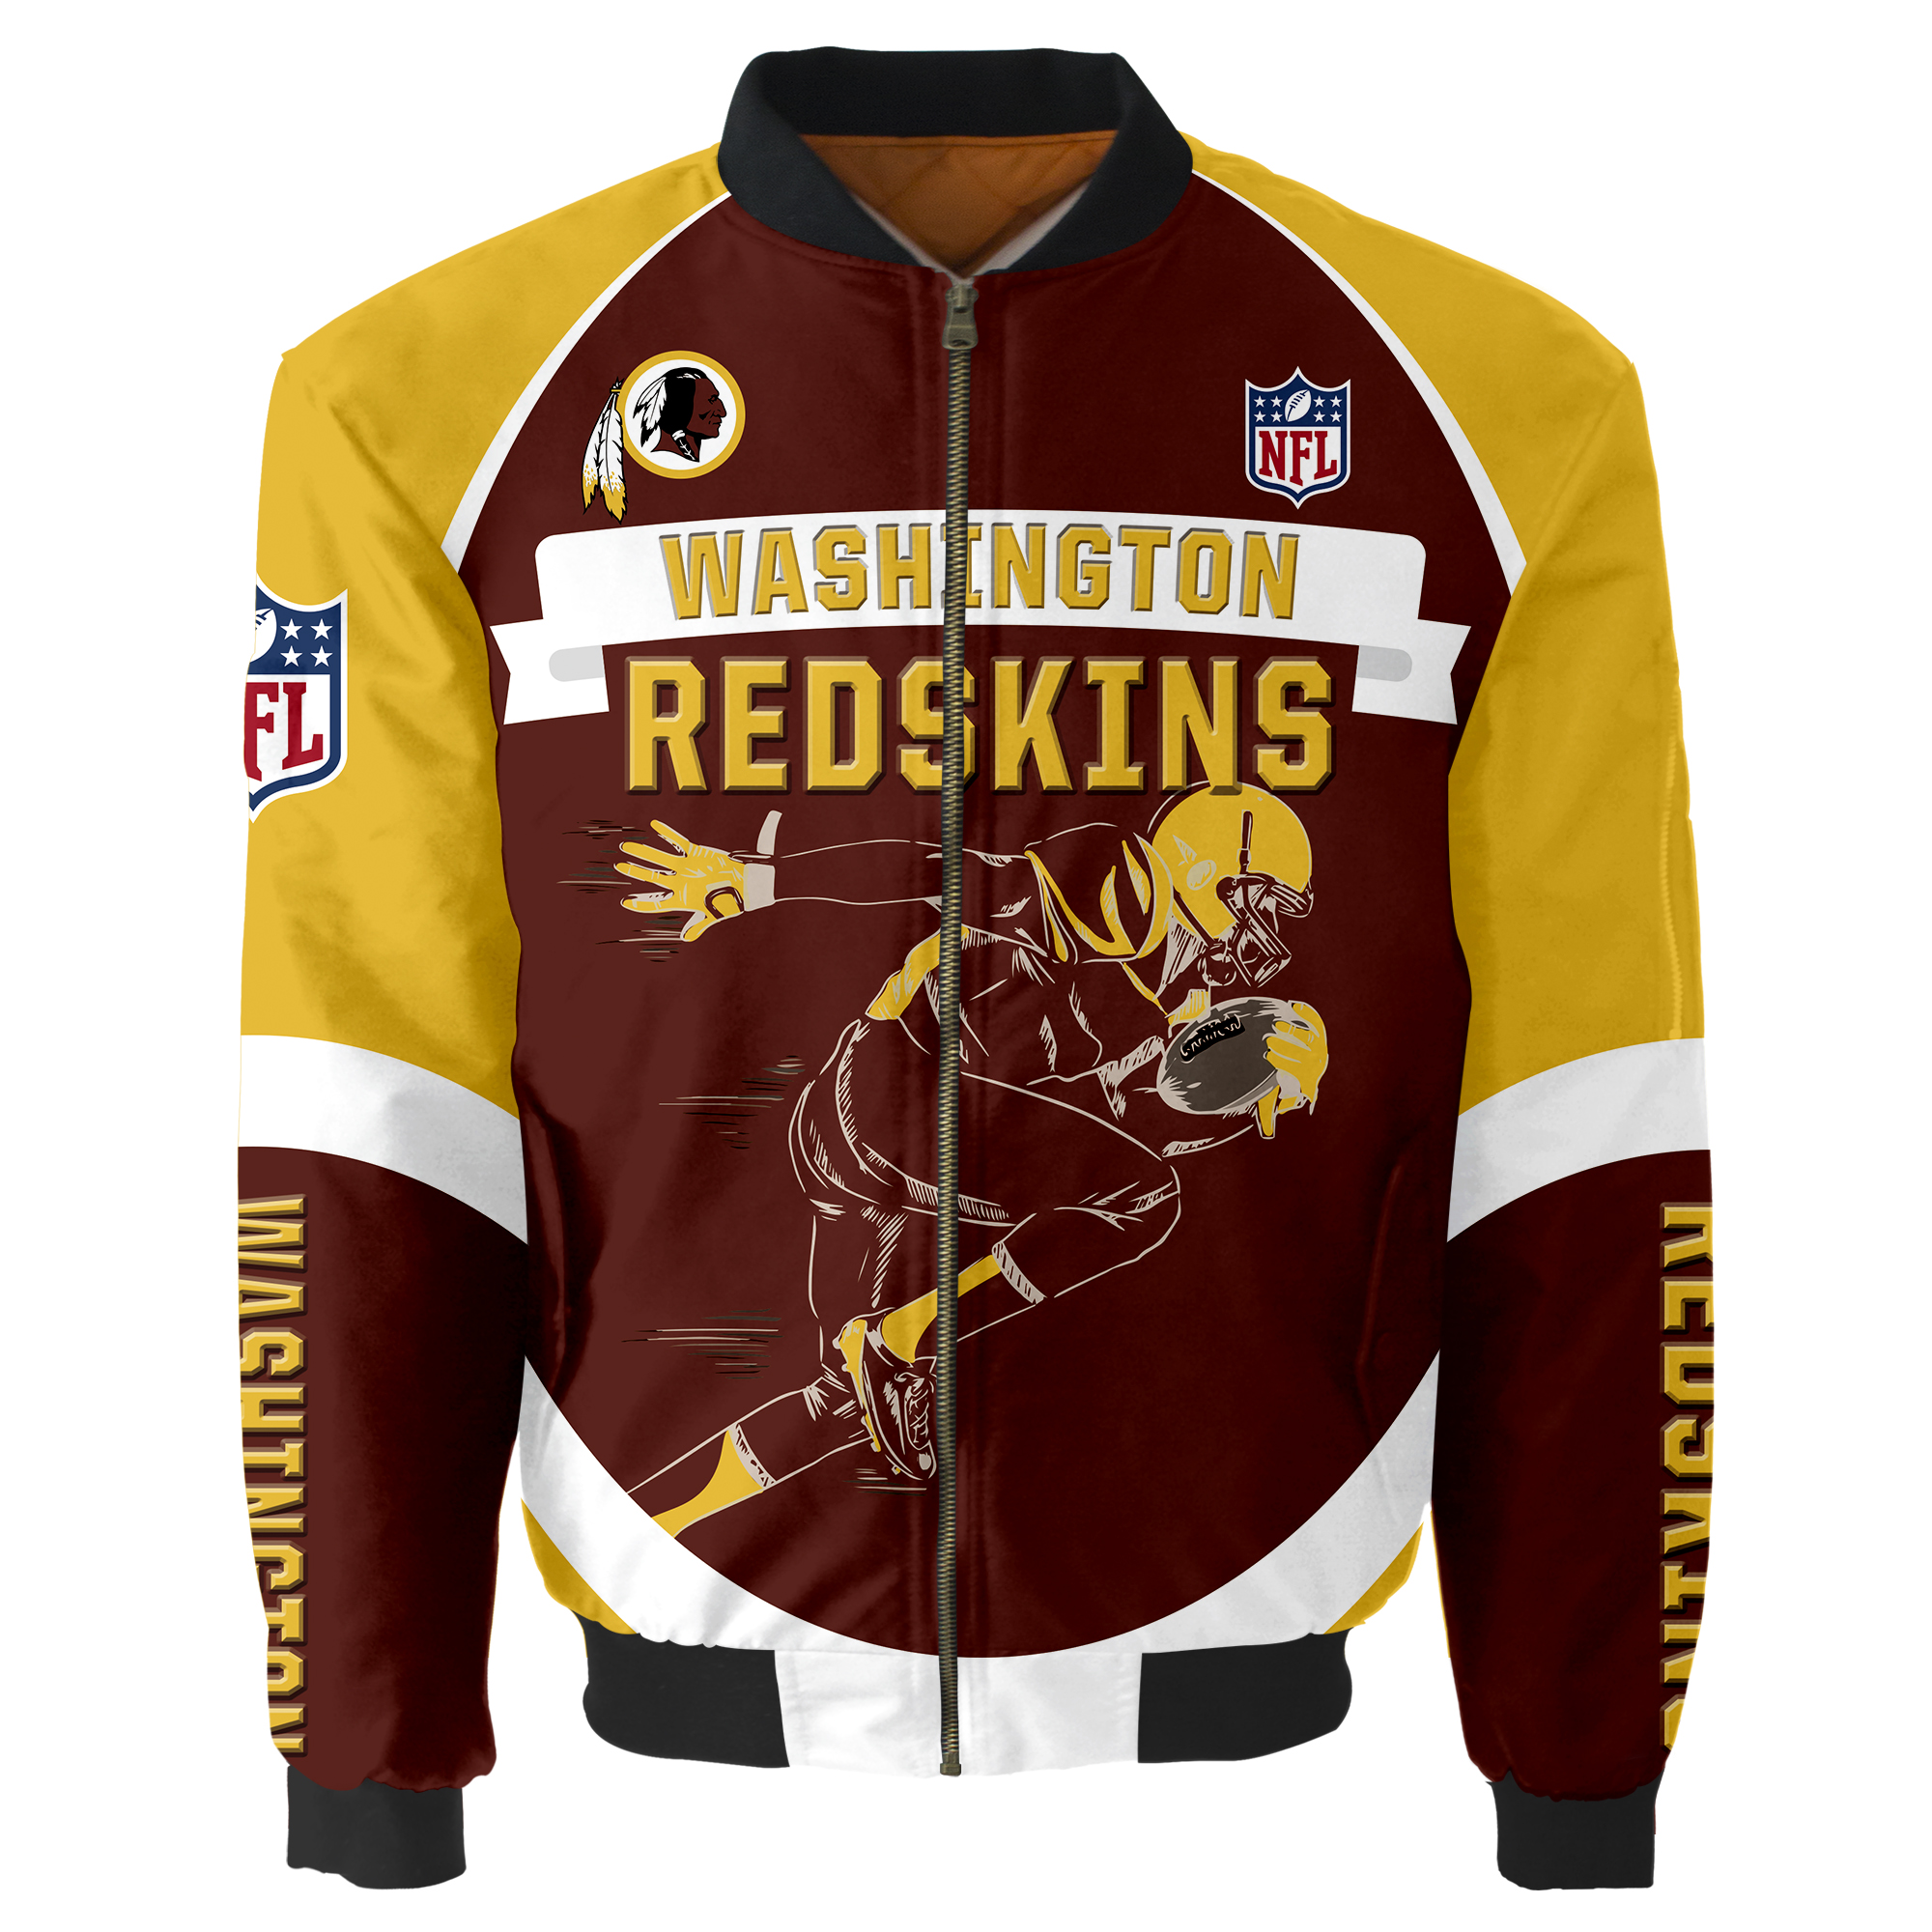 Washington Redskins Bomber jacket